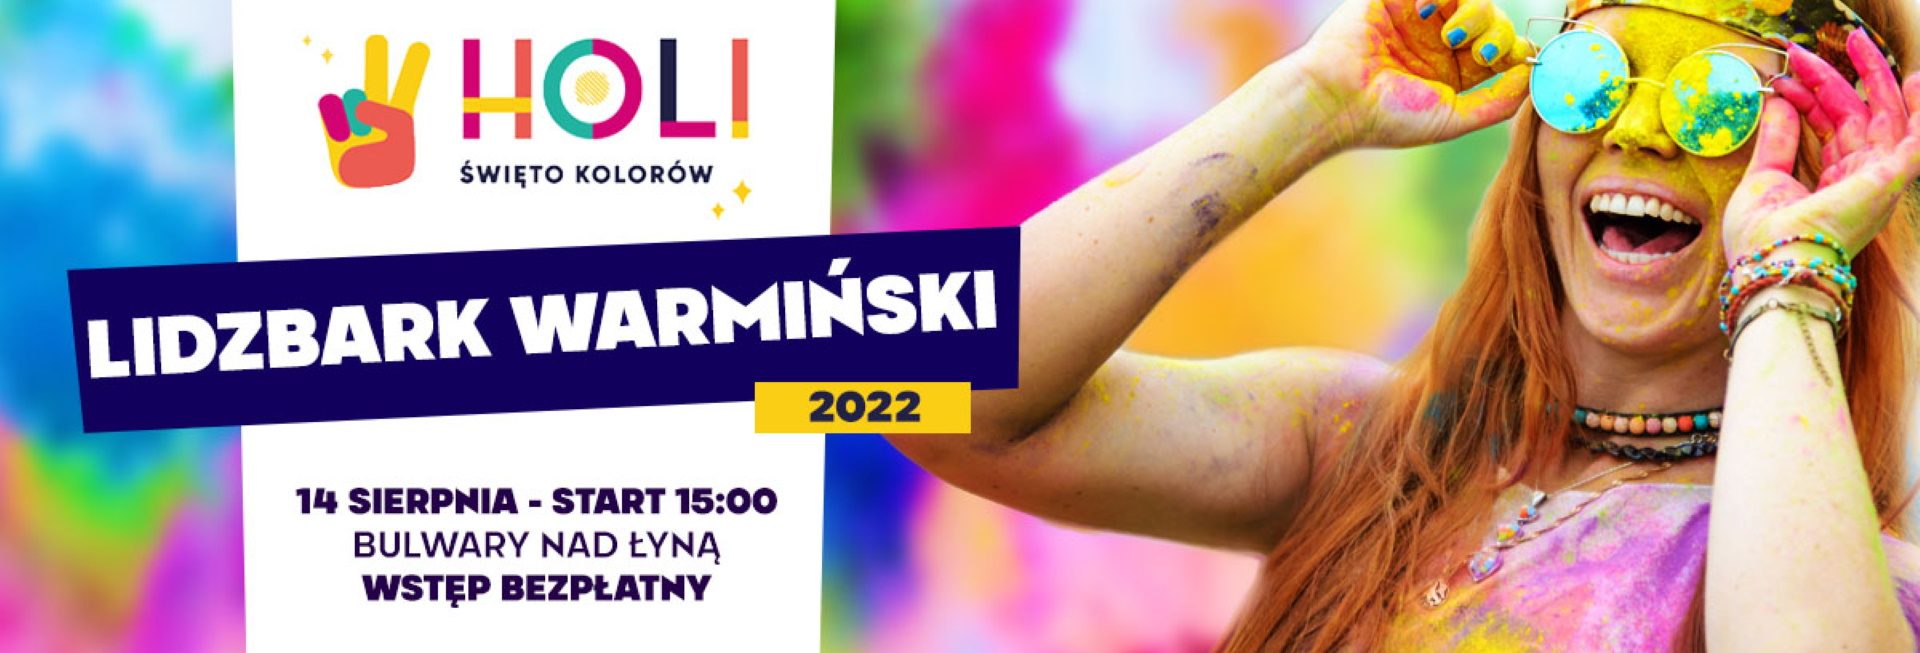 Plakat zapraszający do Lidzbarka Warmińskiego na Holi Święto Kolorów Lidzbark Warmiński 2022.